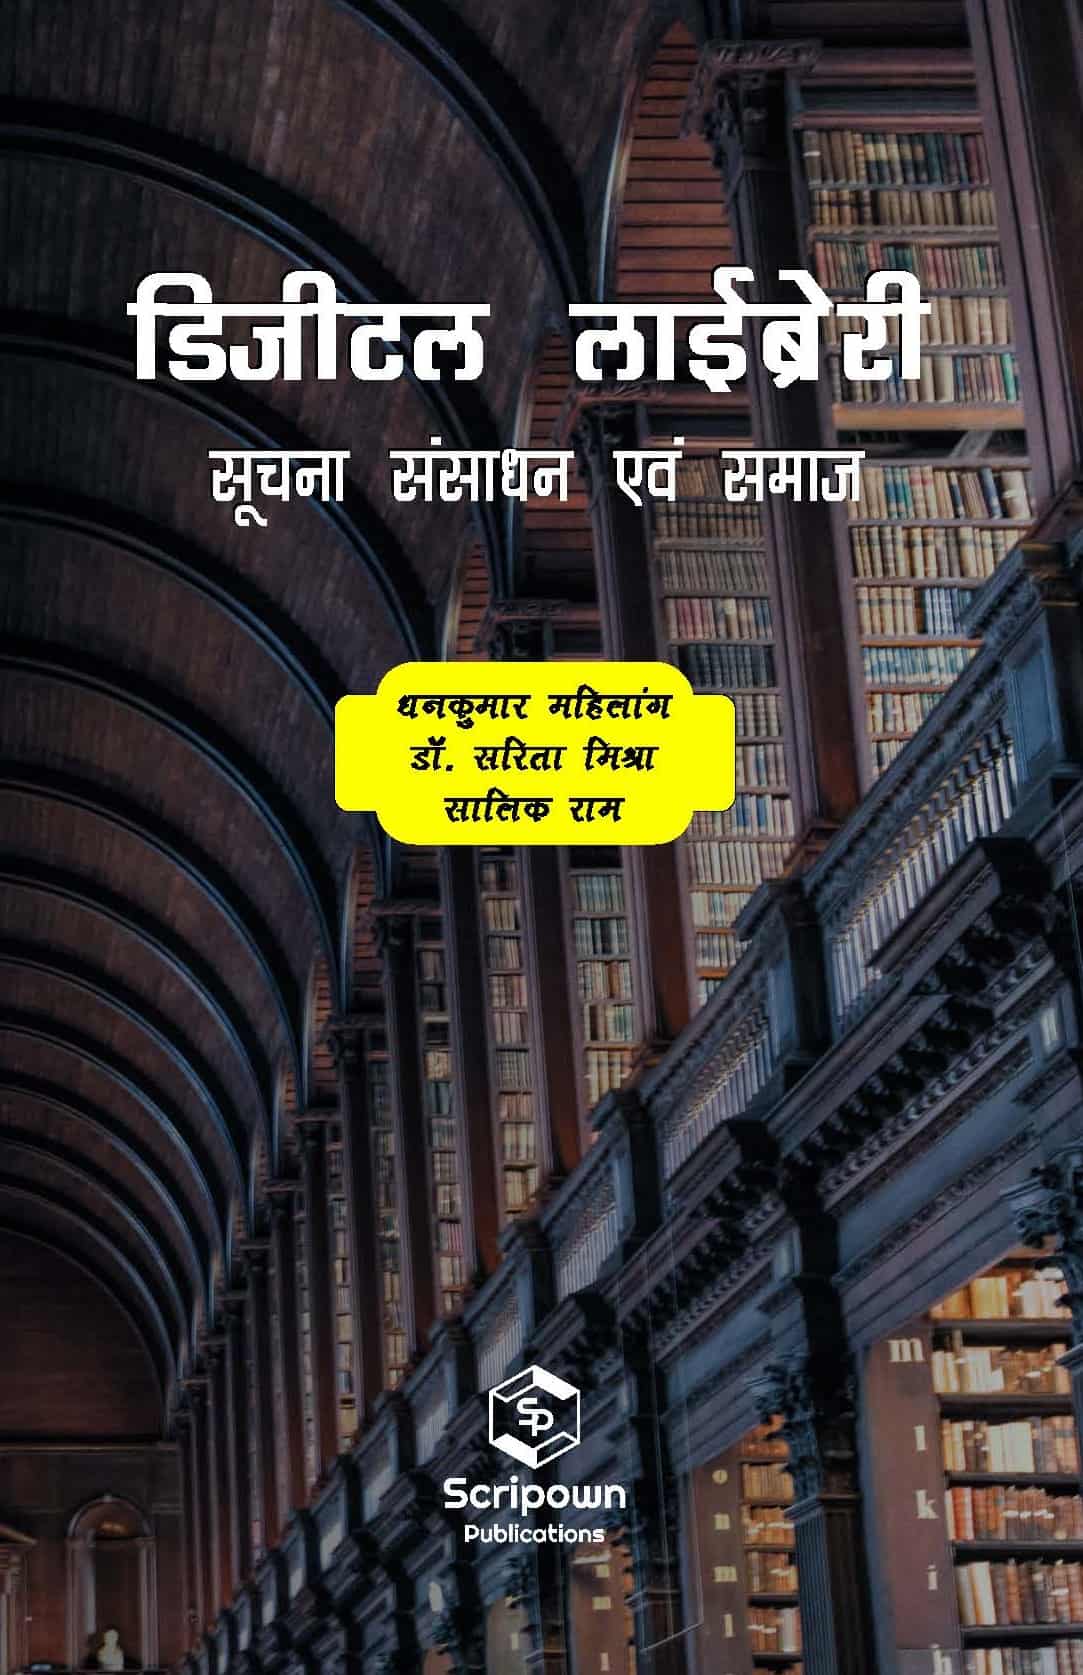 Digital Library: Sochna Sansadhan Evam Samaj